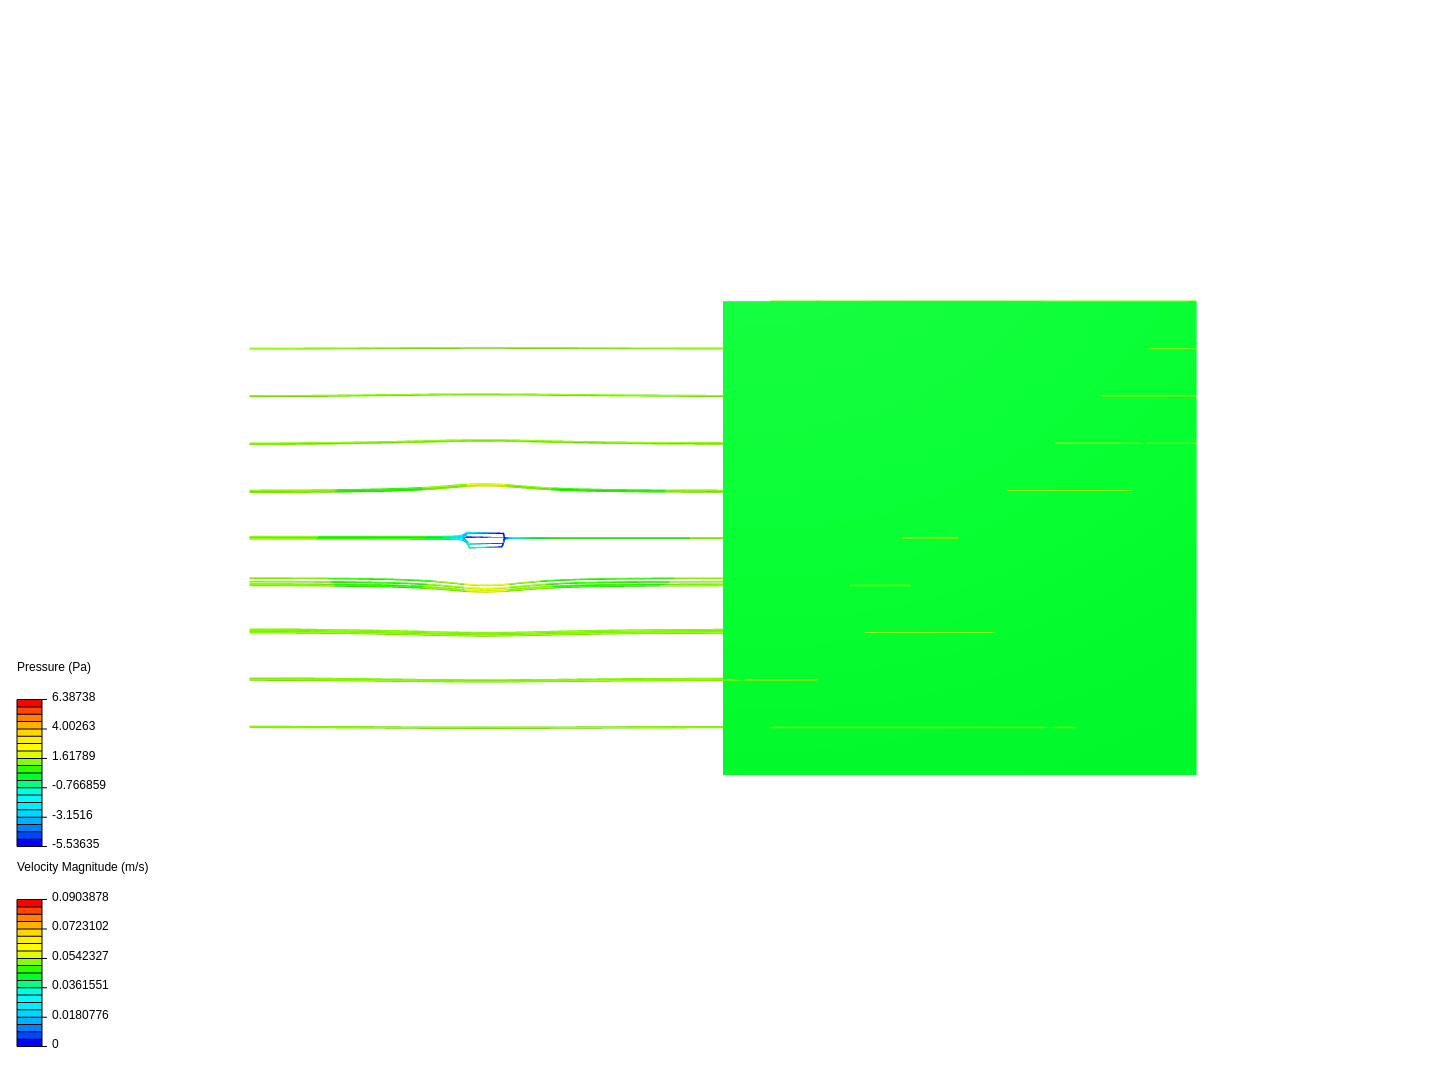 Flow over cylinder image